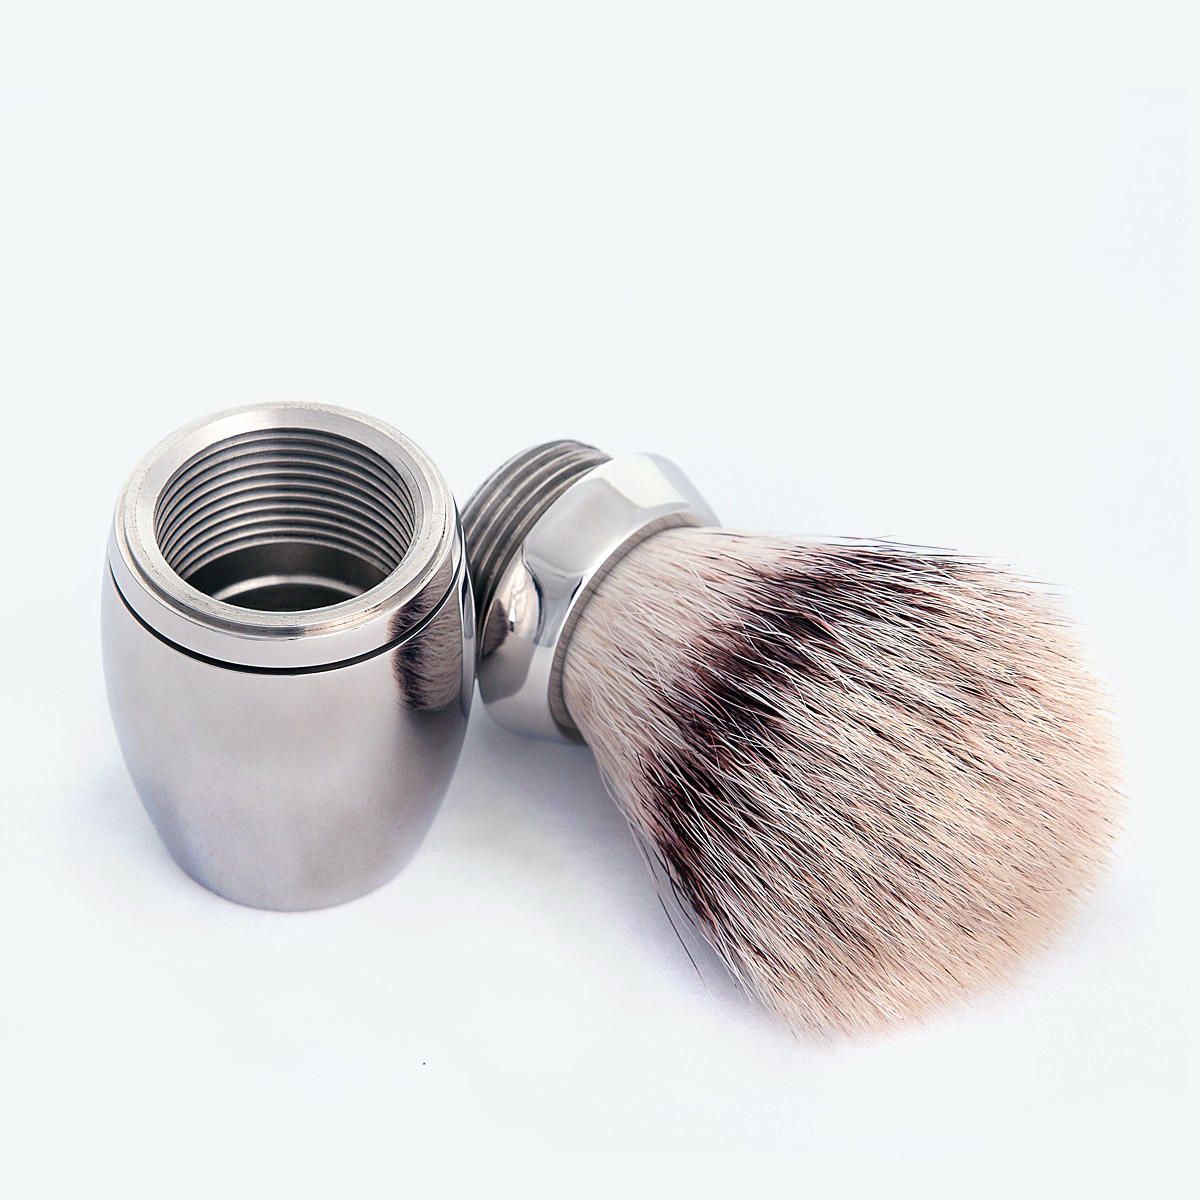 Synthetic Shaving Brush from Wilde & Harte